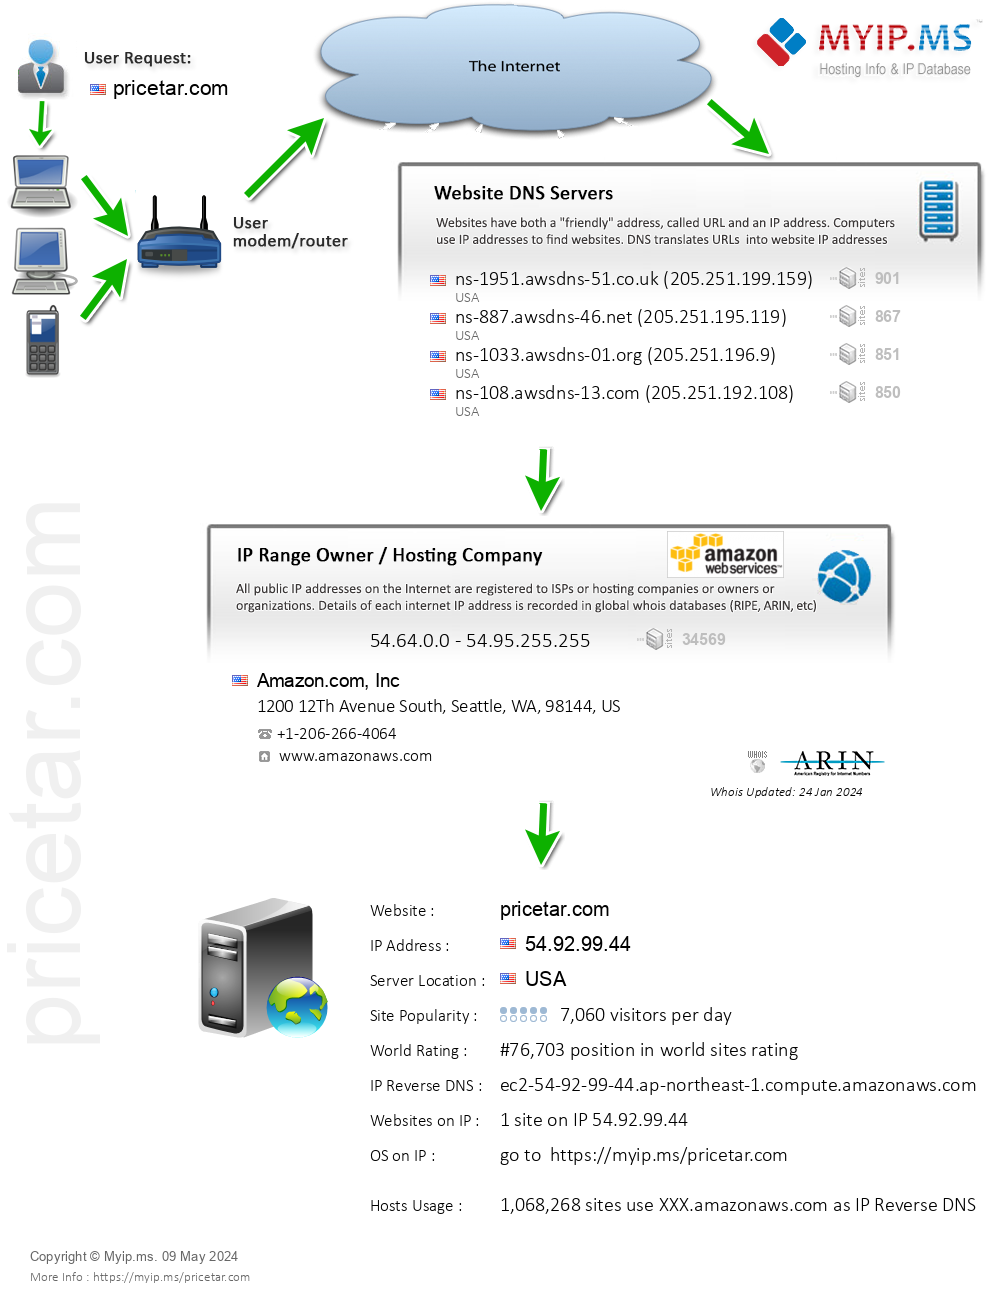 Pricetar.com - Website Hosting Visual IP Diagram